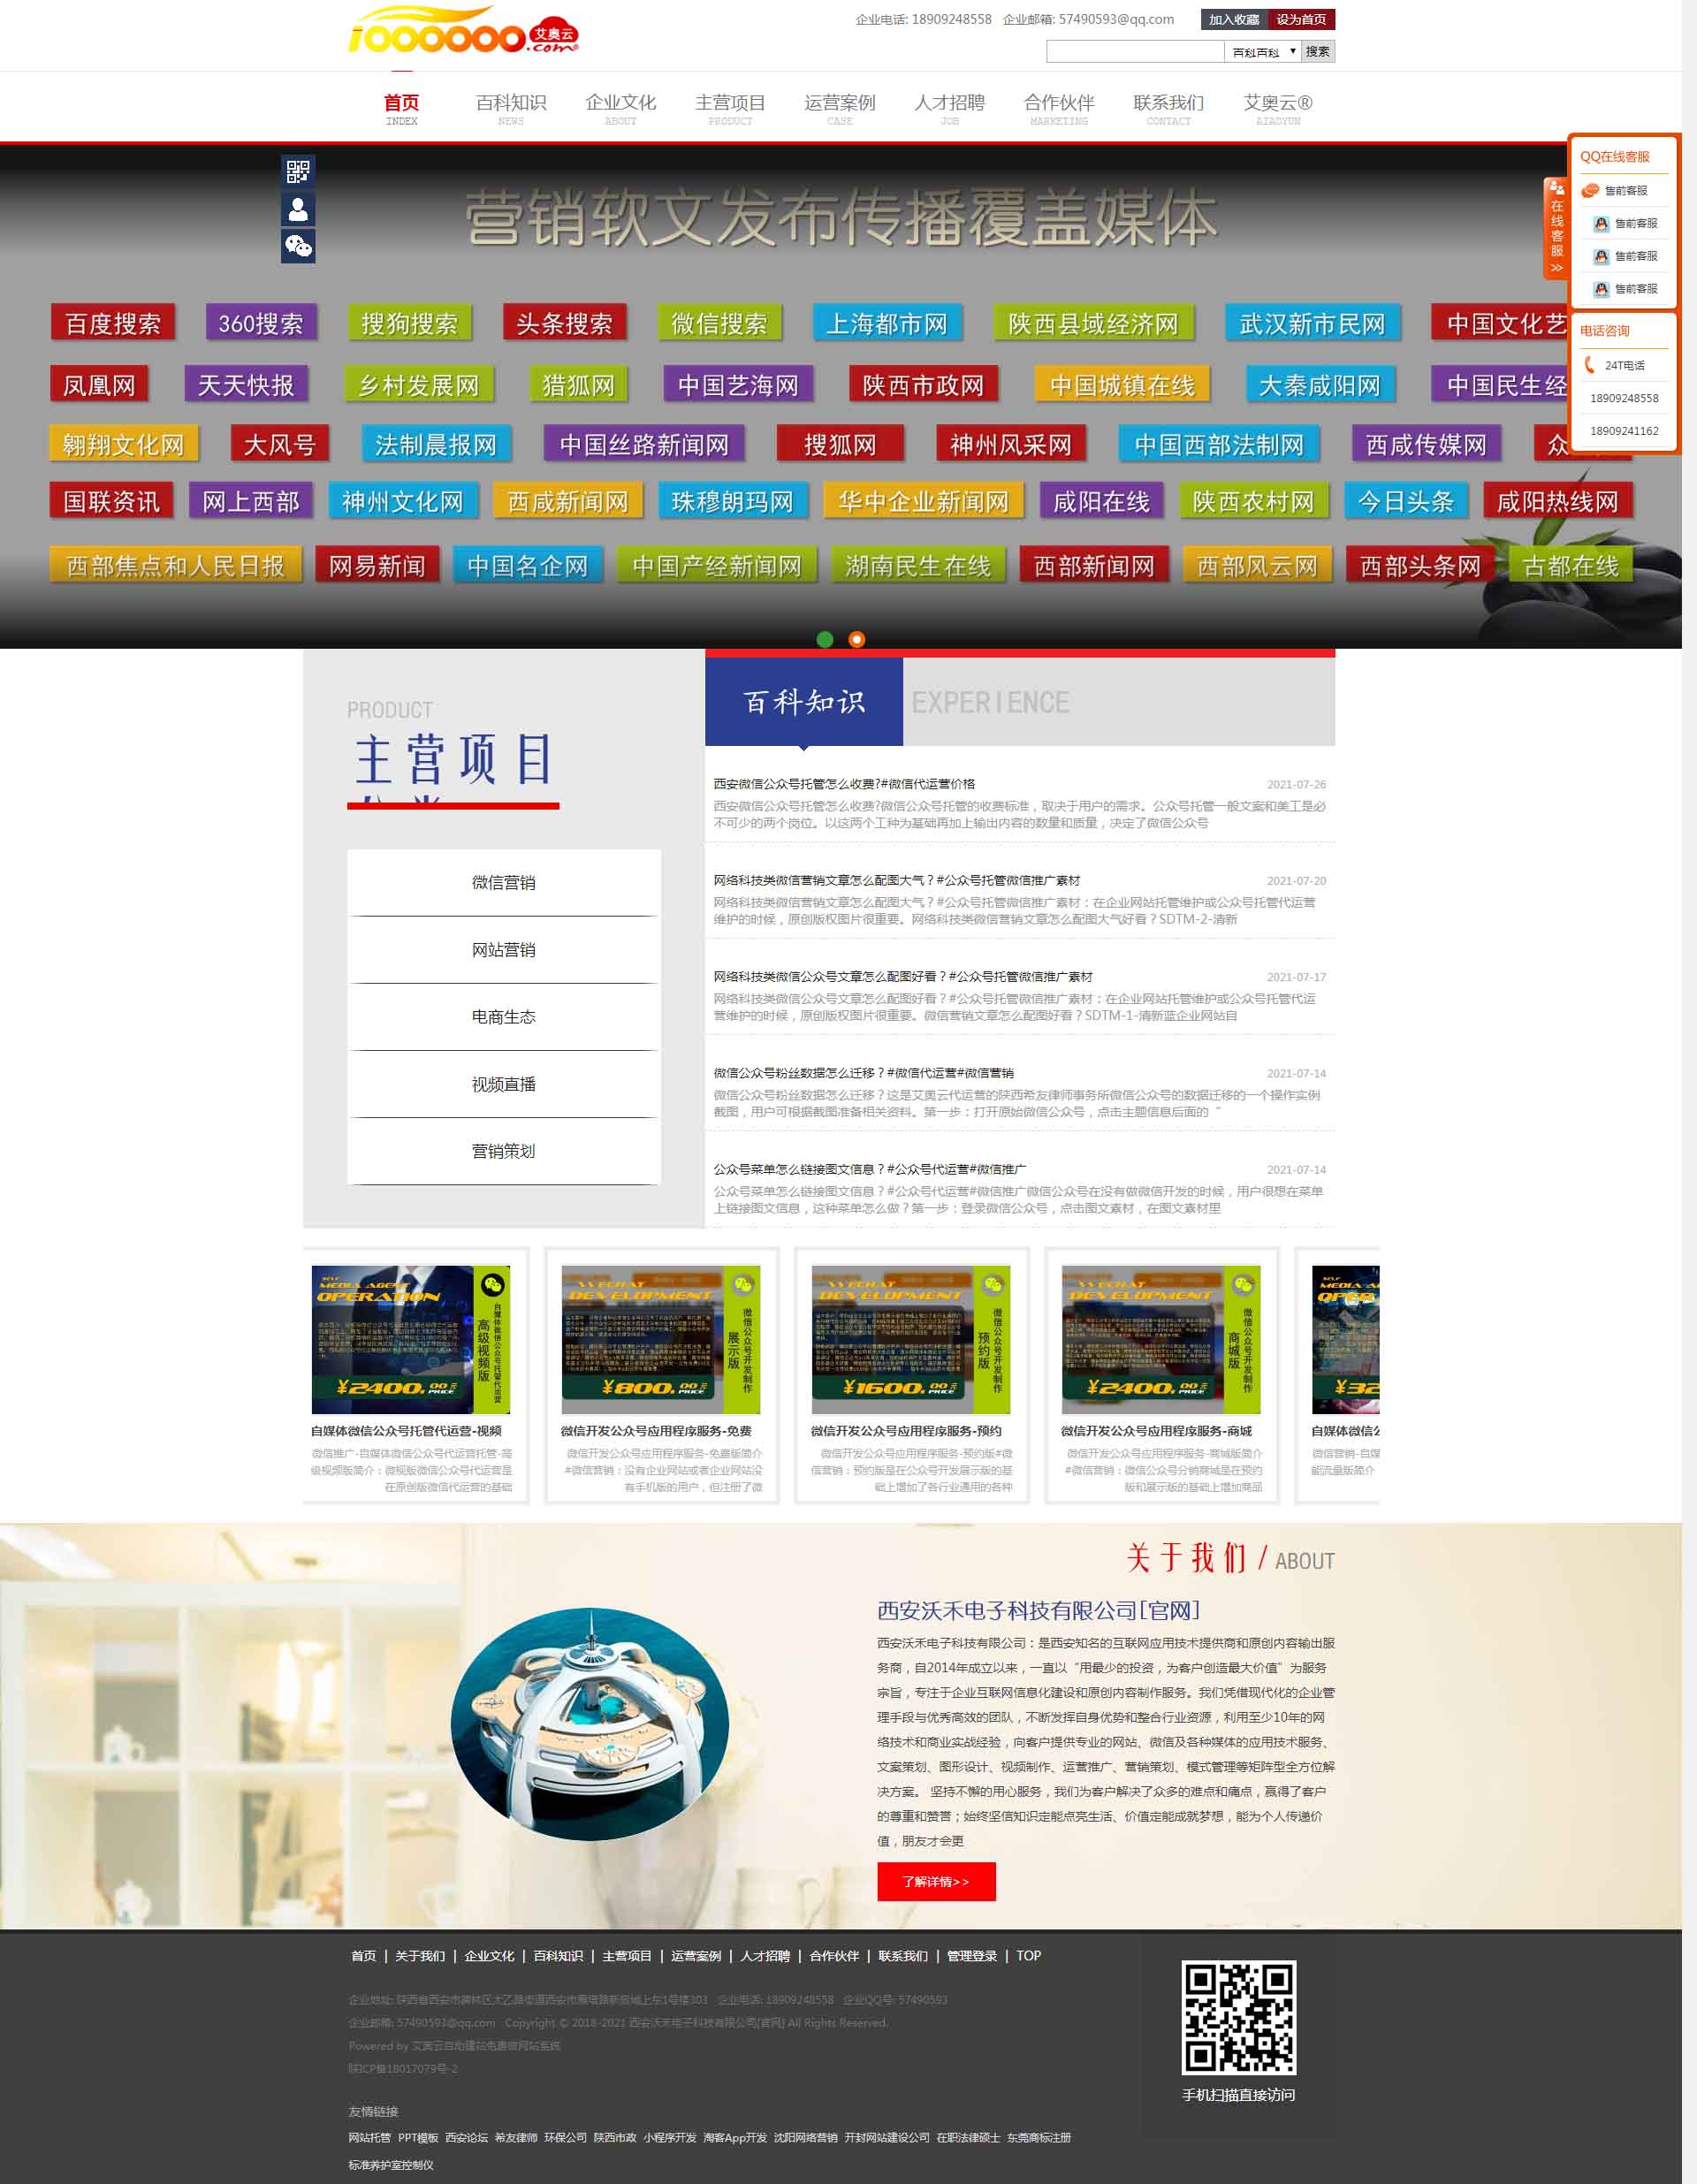 藏青蓝大气宽屏免费网站个人企业自助建站模板-047#网站建设.jpg